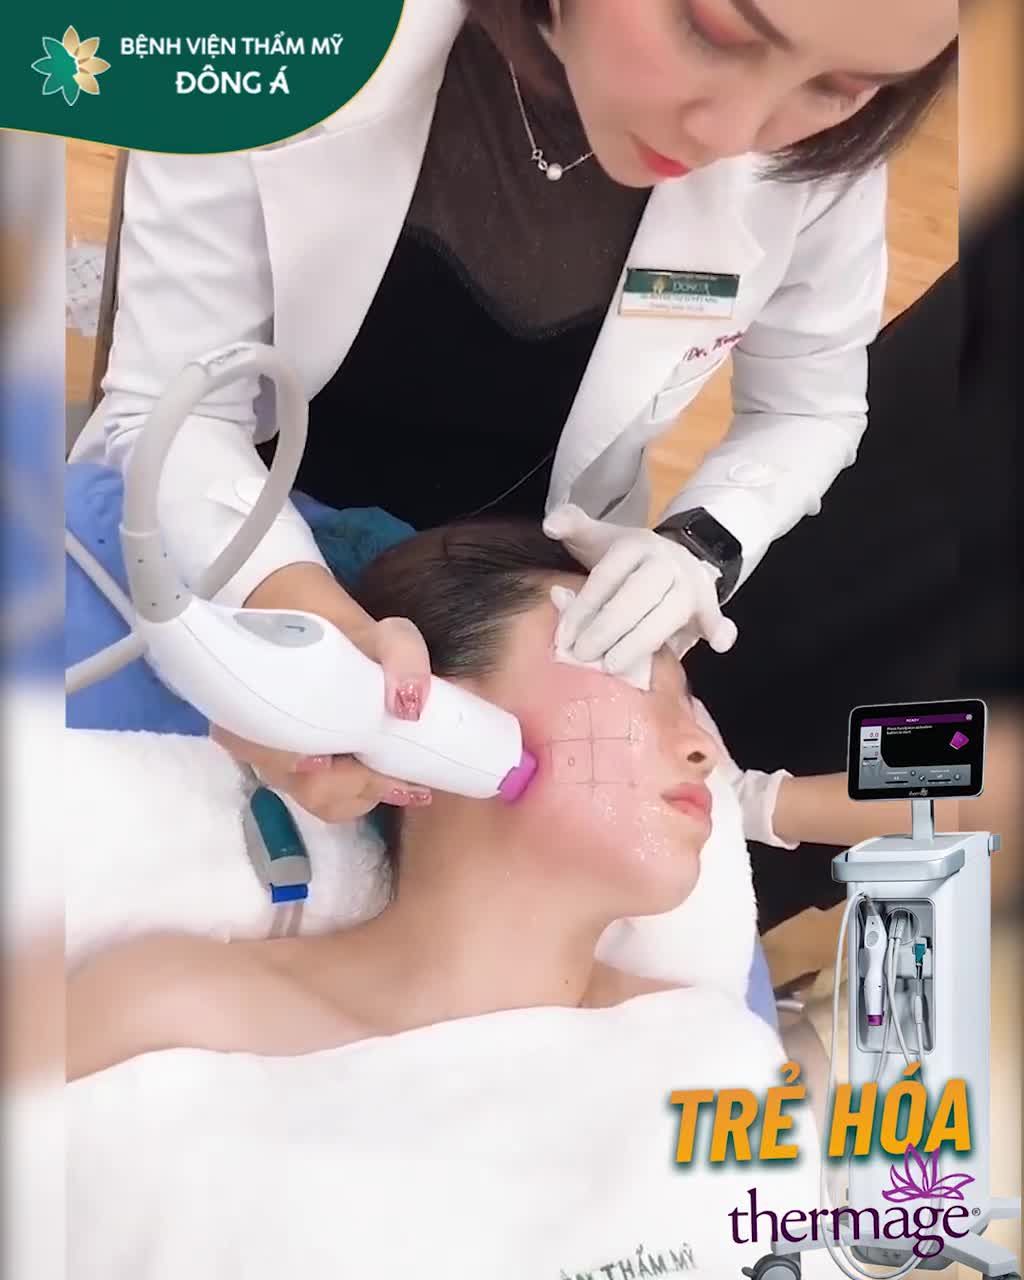 Quanh đi quẩn lại đã sang tháng 12 Dịp này trẻ hóa làn da là nhất với Thermage FLX tại Bệnh viện Đông Á